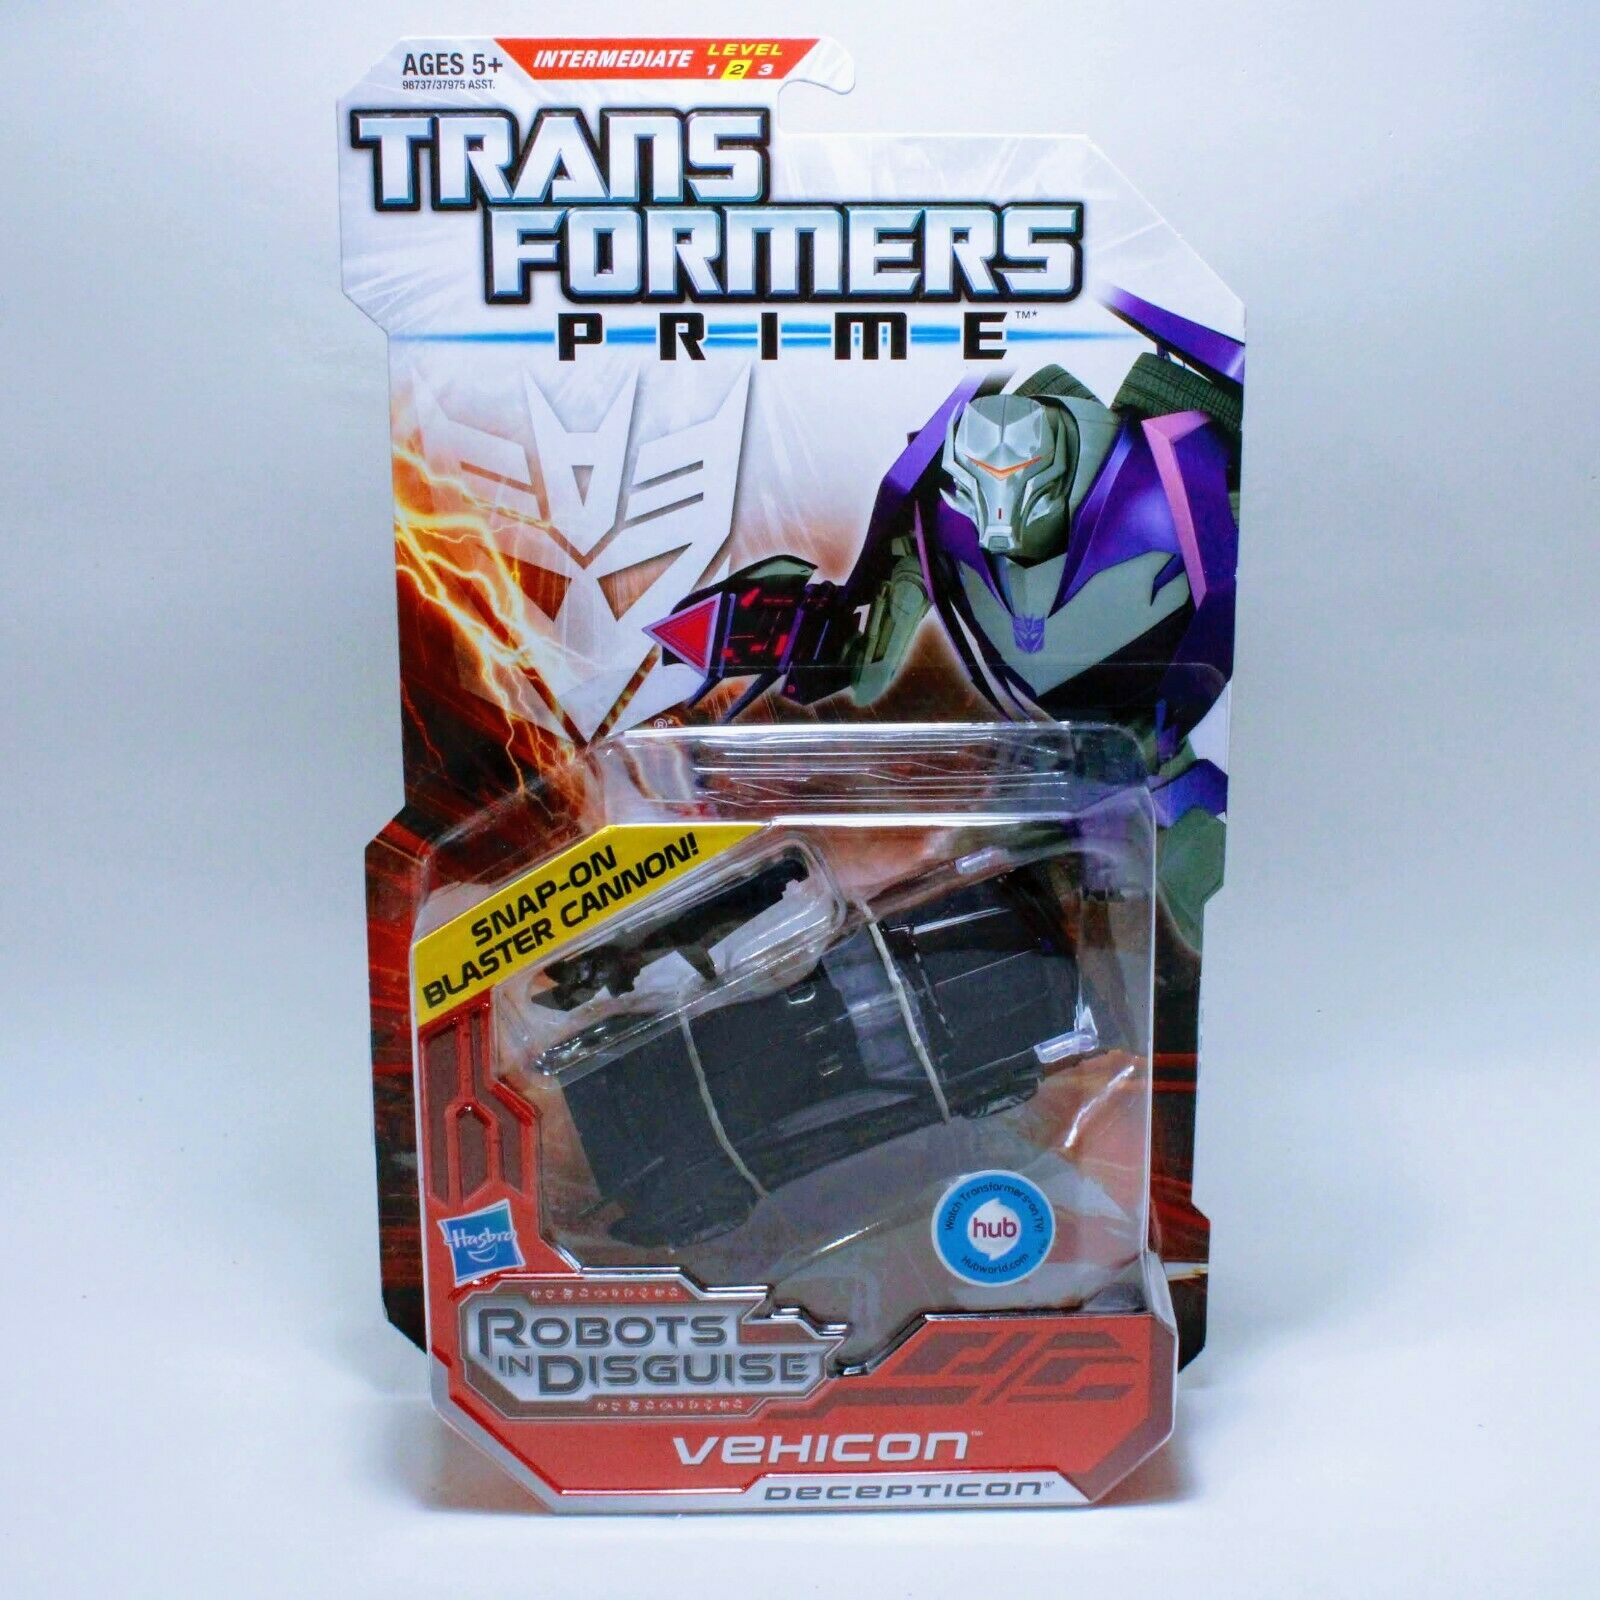 Transformers Prime Vehicon - Decepticon Robots in Disguise RiD Figure